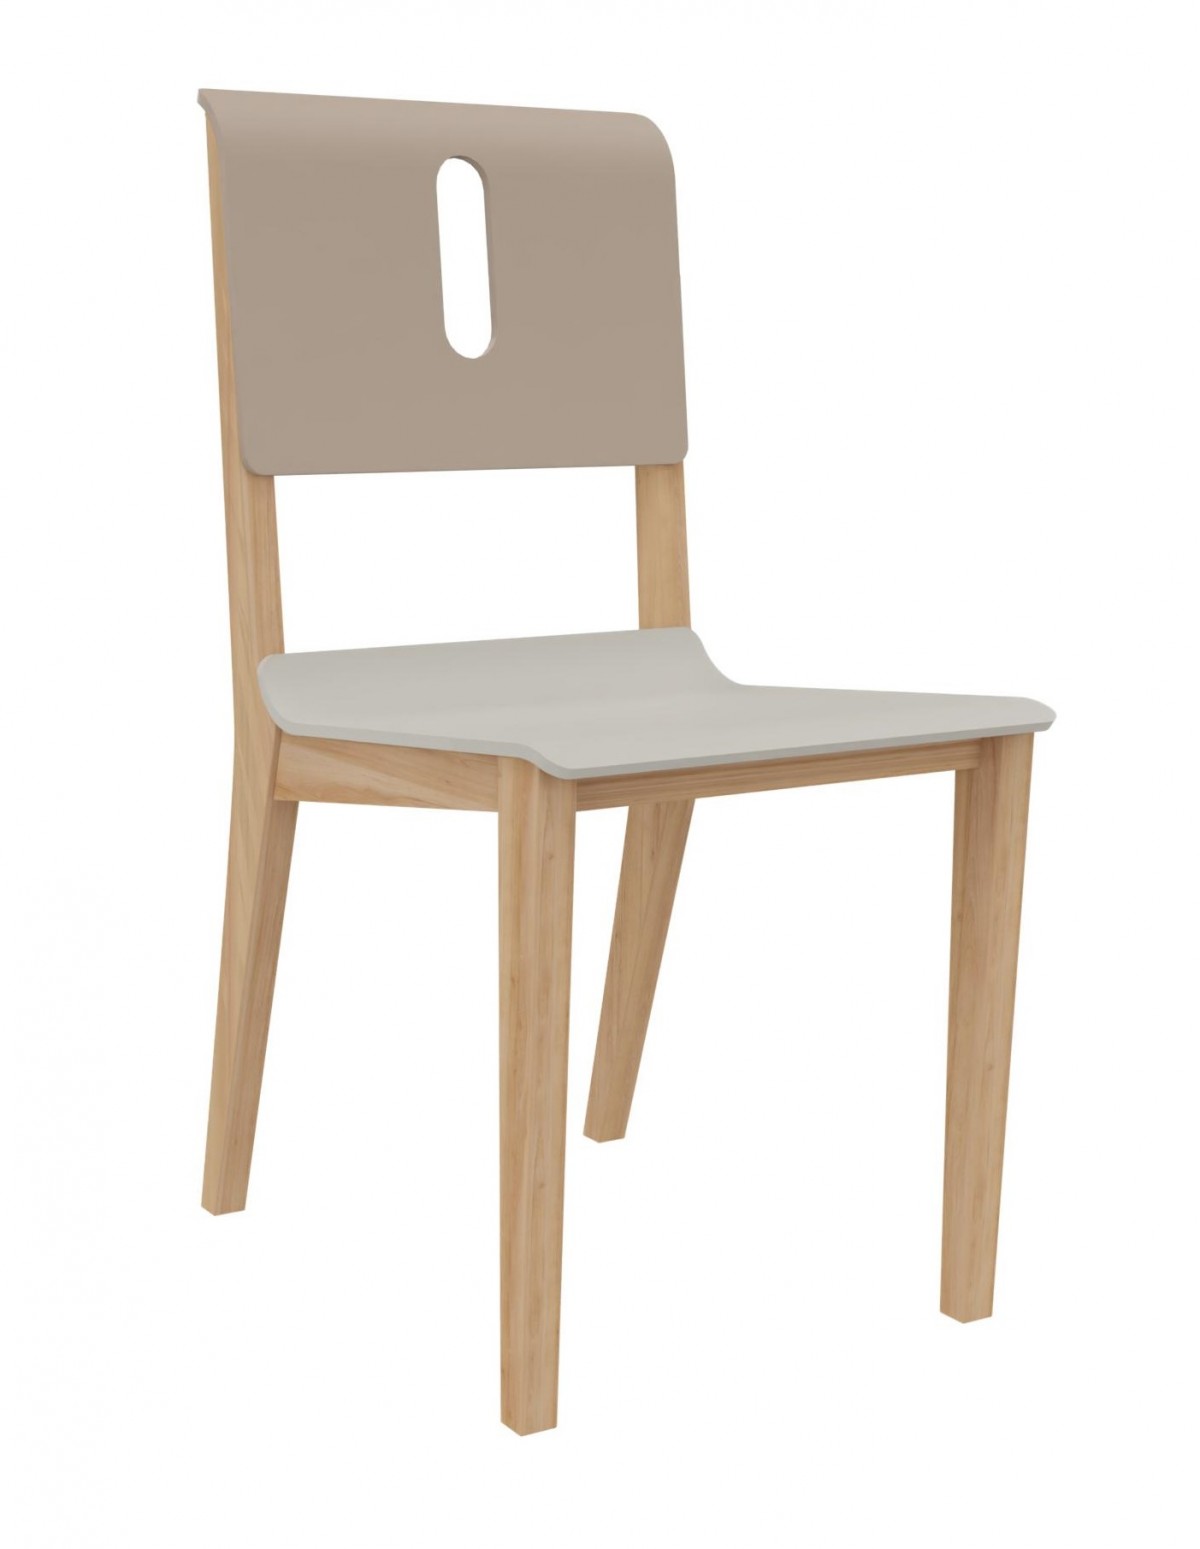 Chaise 4 pieds Wood assise et dos séparés